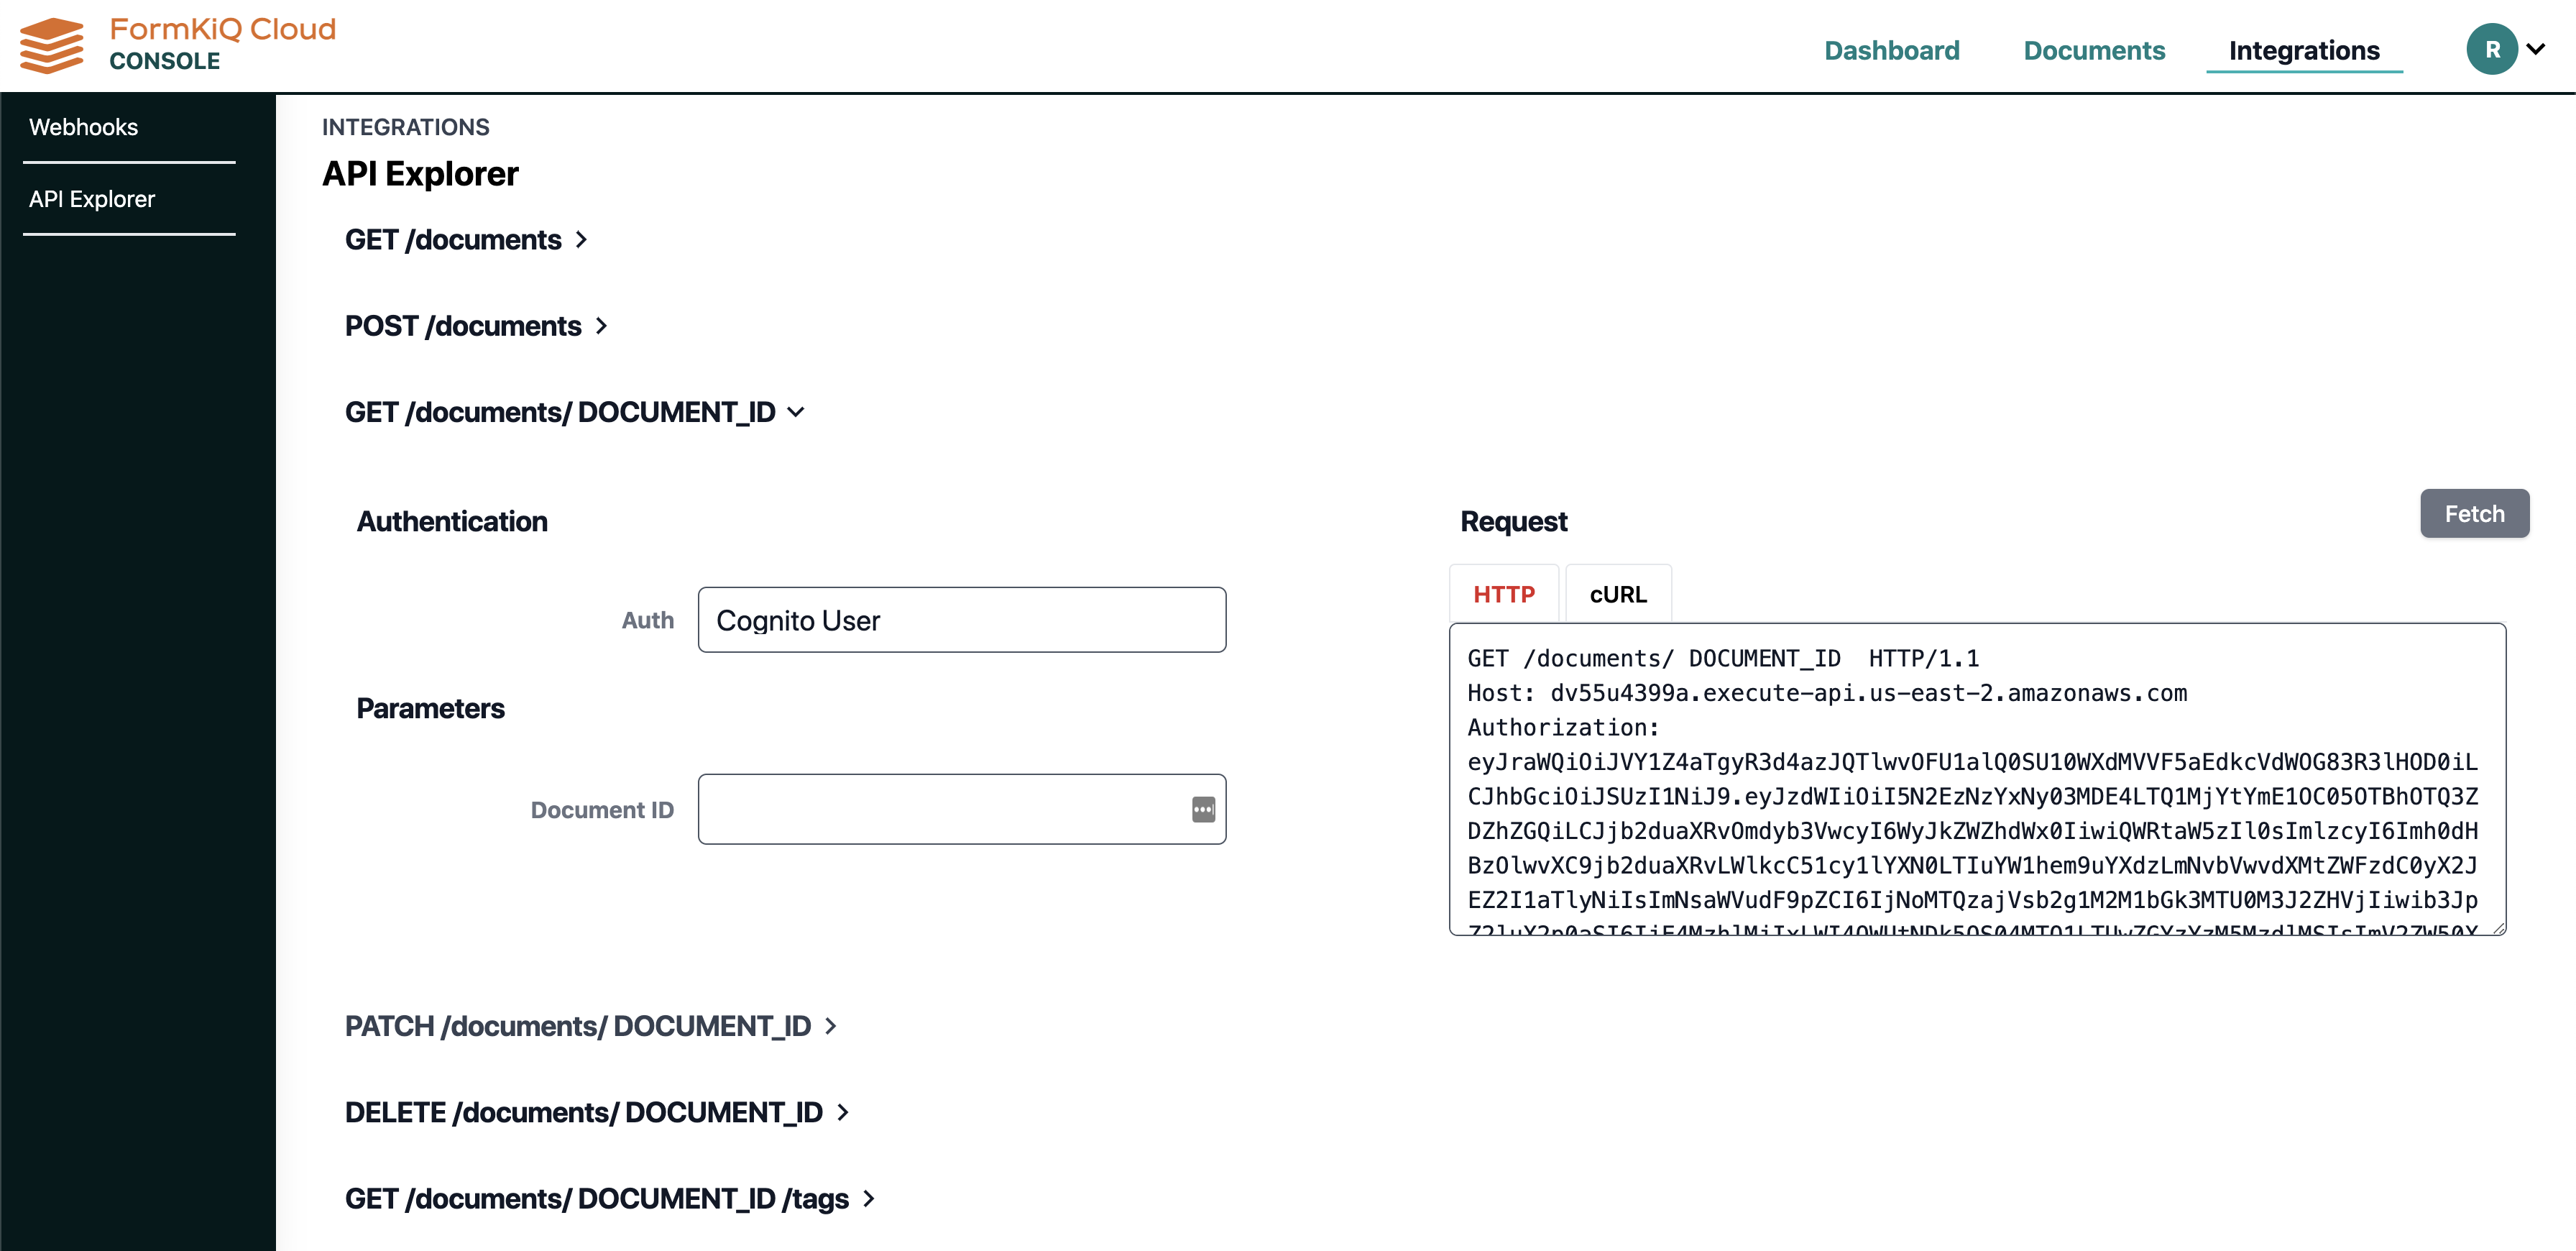 FormKiQ's Document Console includes an API Explorer